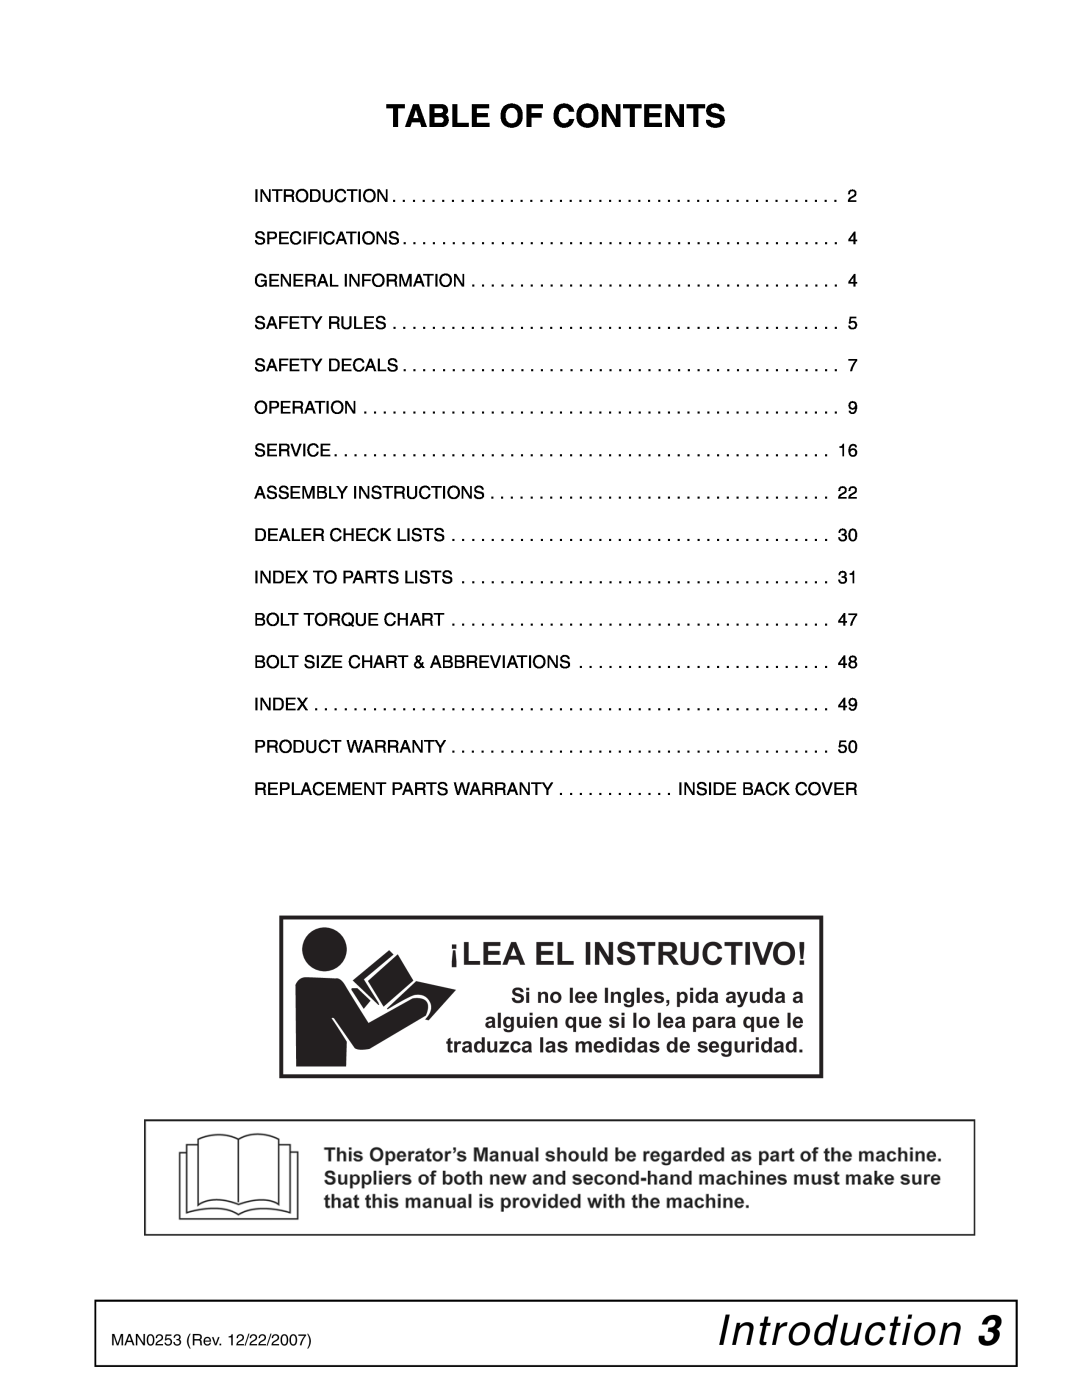 Woods Equipment MX54T, MX61T manual Introduction, Table Of Contents, Lea El Instructivo 